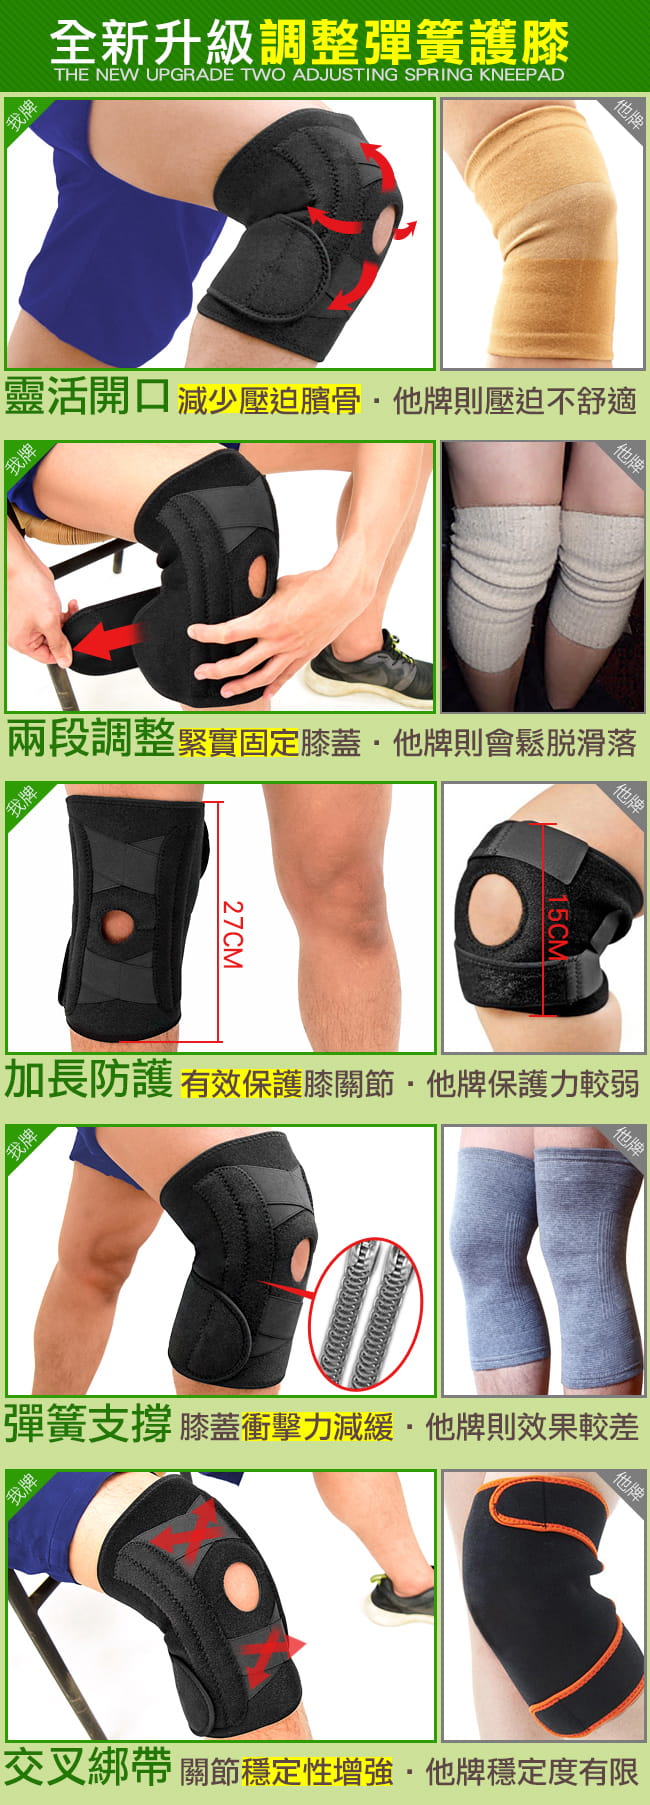 寬版X加壓雙彈簧護膝蓋 (前端開孔開放式髕骨護腿/綁帶束帶膝蓋保暖/可調式調整調節鬆緊纏繞) 1